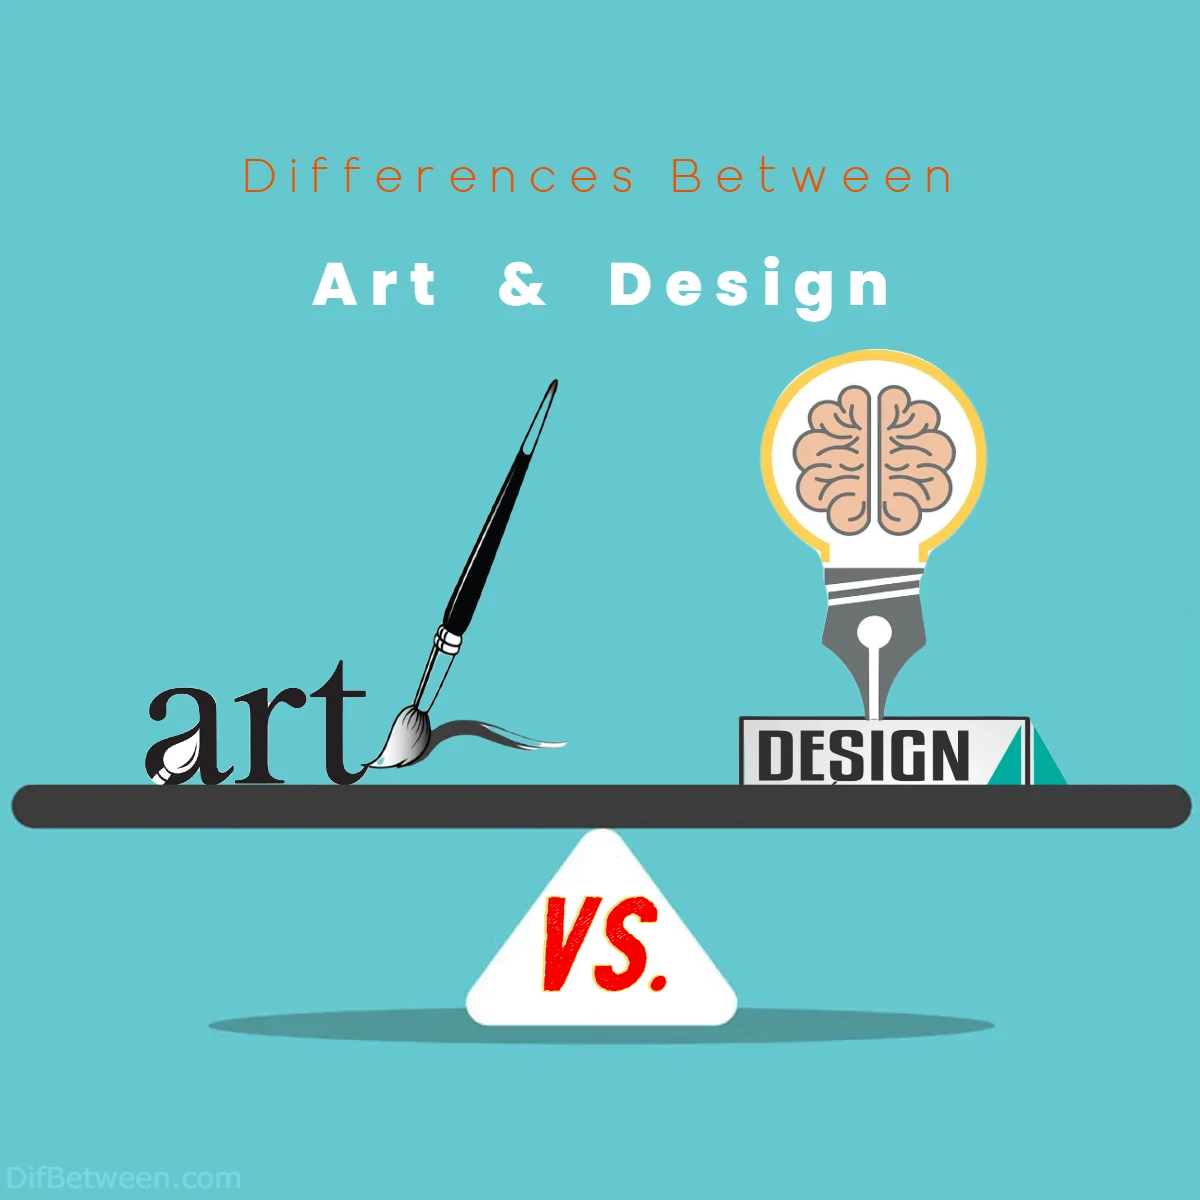 Differences Between Art vs Design